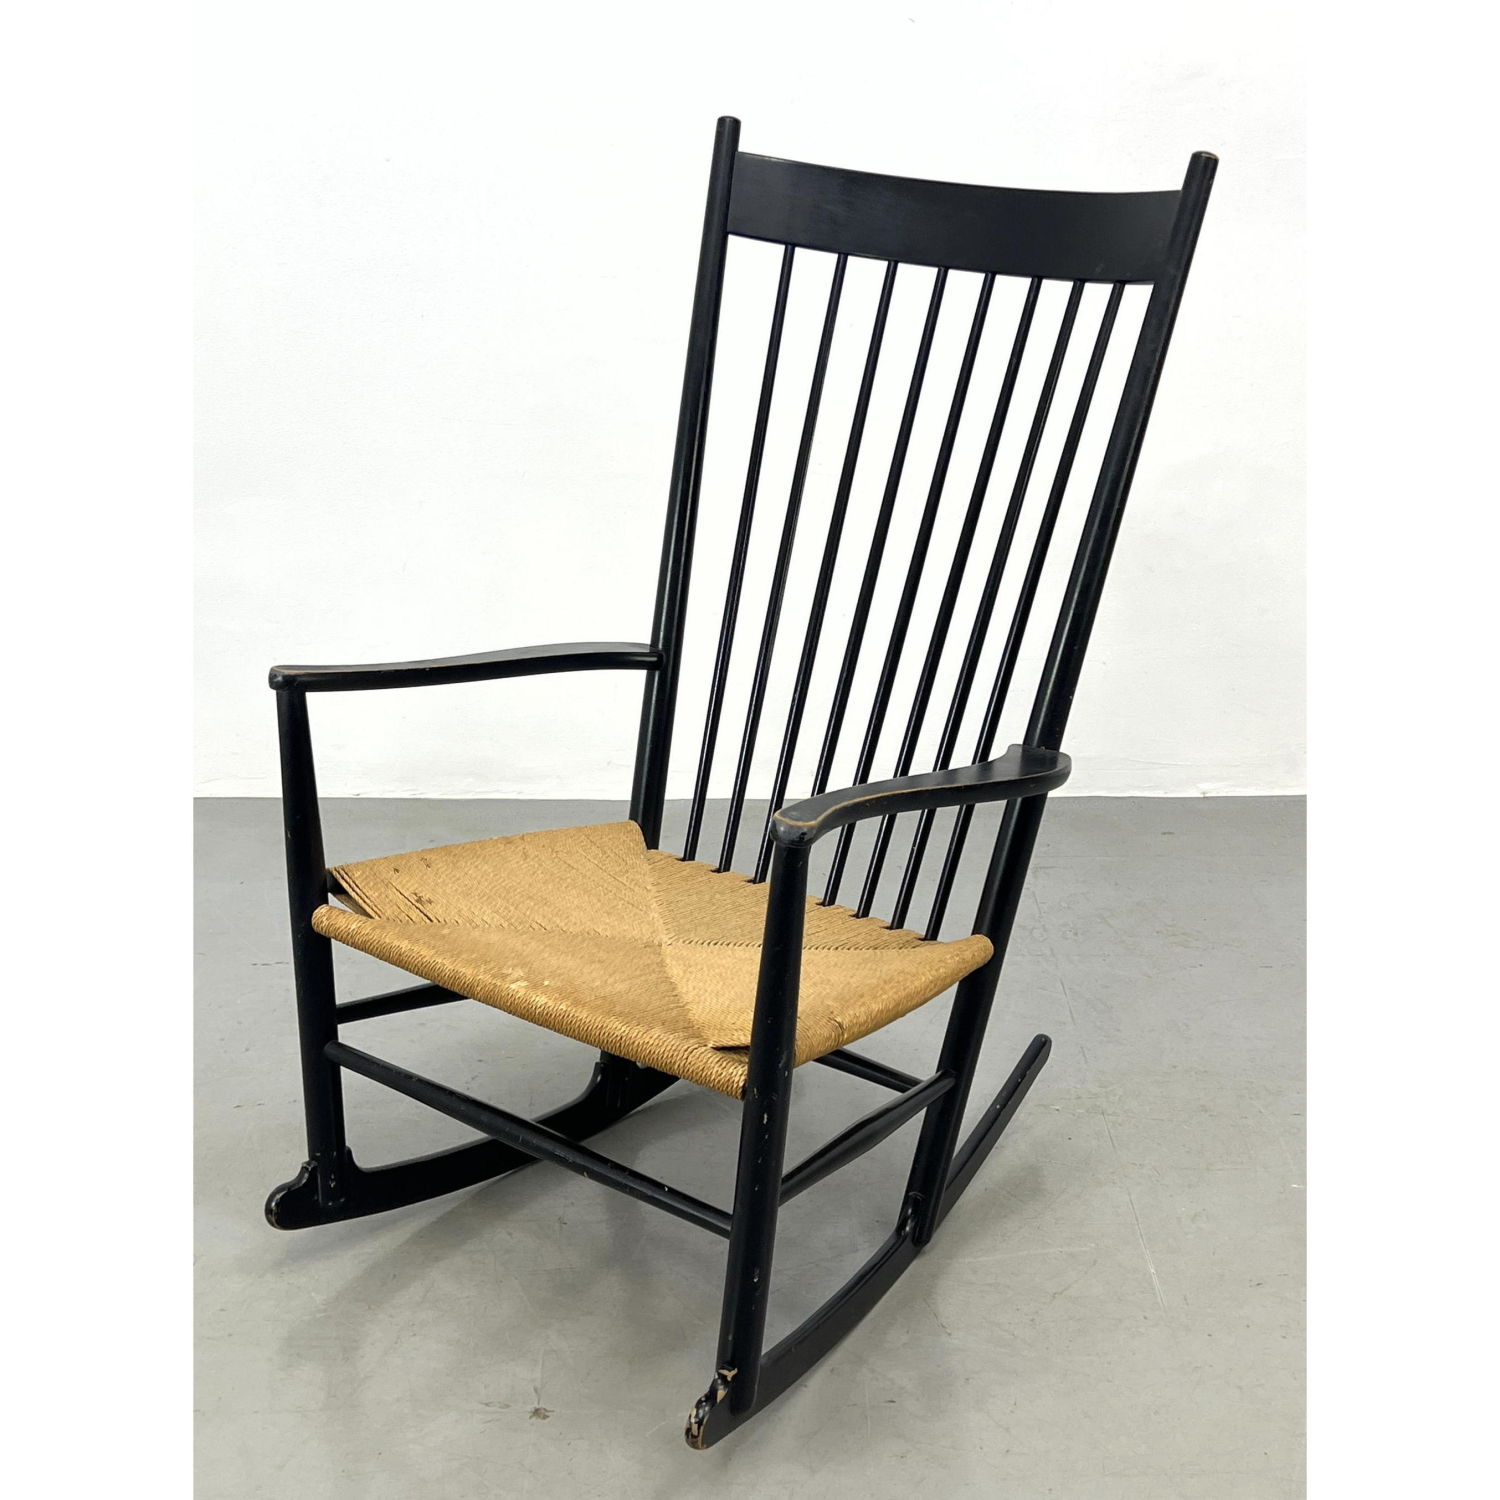 Hans Wegner rocking chair Dimensions  2b90a6